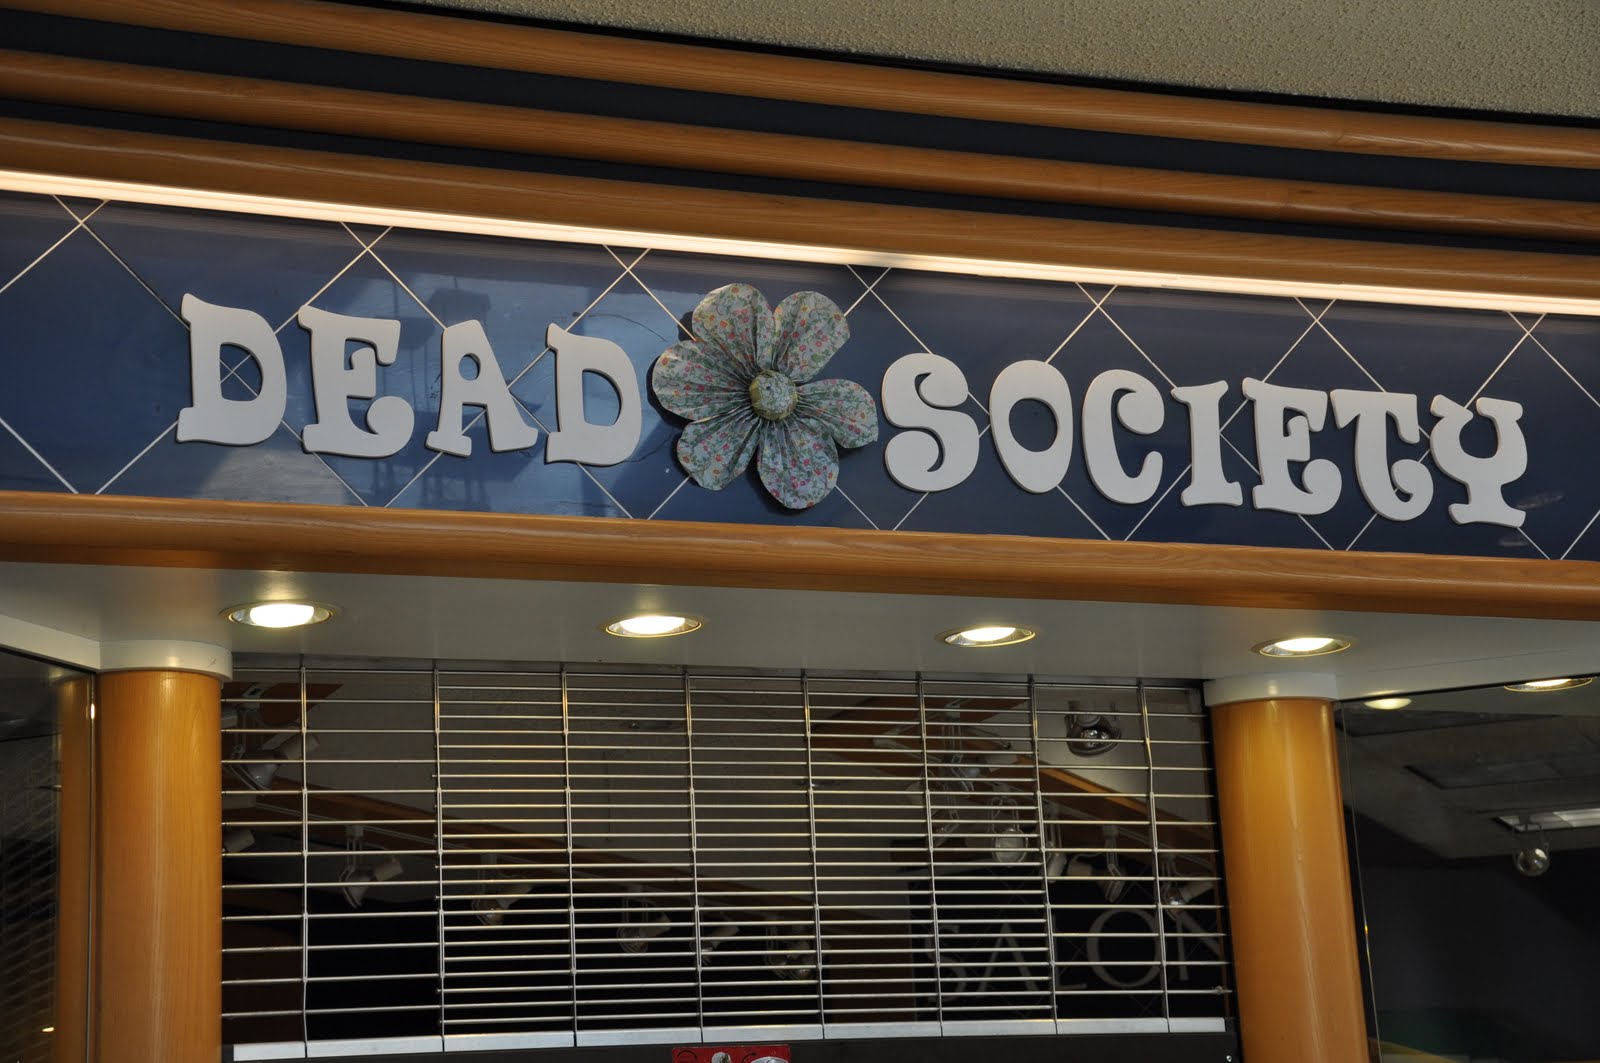 Dead Flower Society Apparel